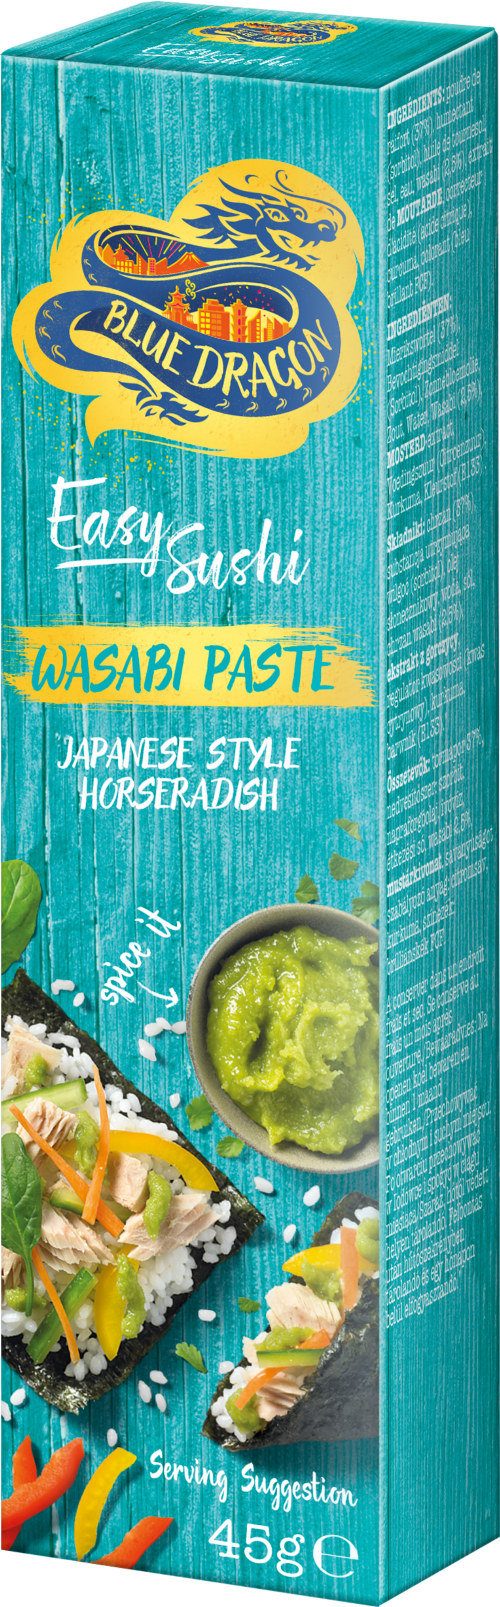 BLUE DRAGON Wasabi Paste 45g